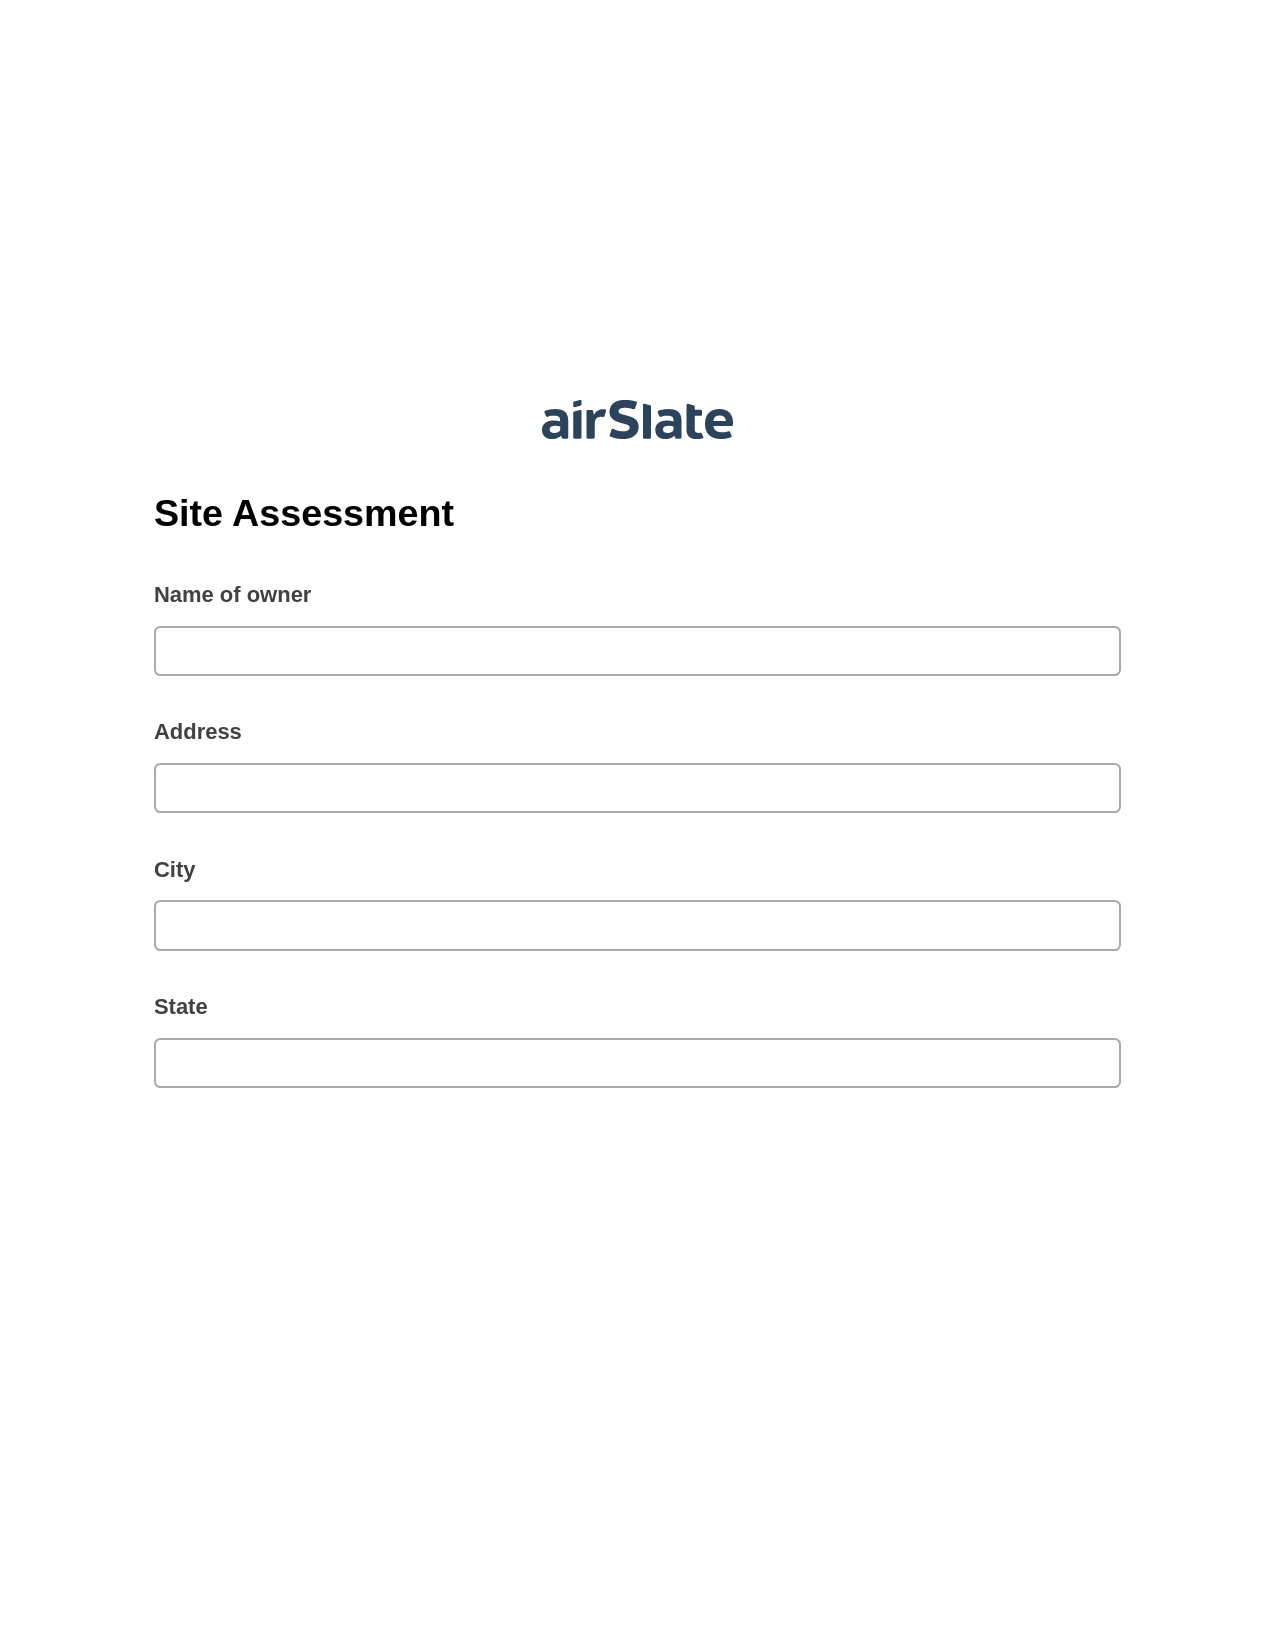 Site Assessment Pre-fill from Excel Spreadsheet Bot, Revoke Access Bot, Post-finish Document Bot